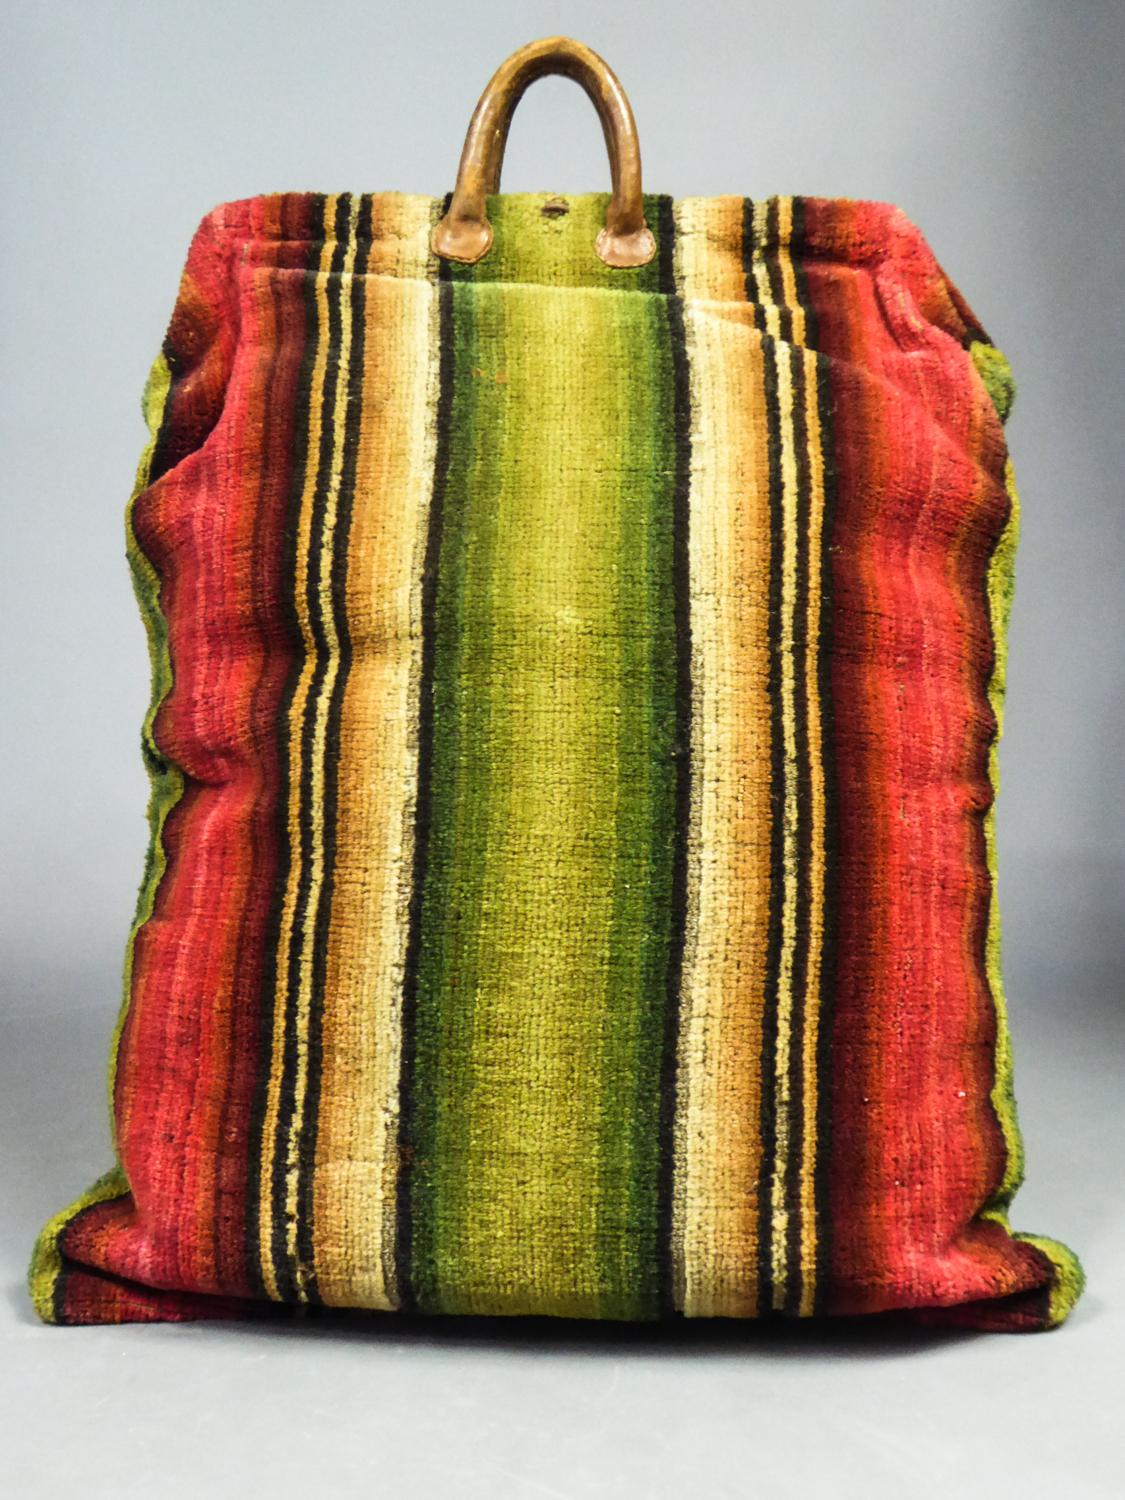  Sac de voyage en tapisserie de laine taillée et cuir - France, fin du XVIIIe siècle Unisexe 